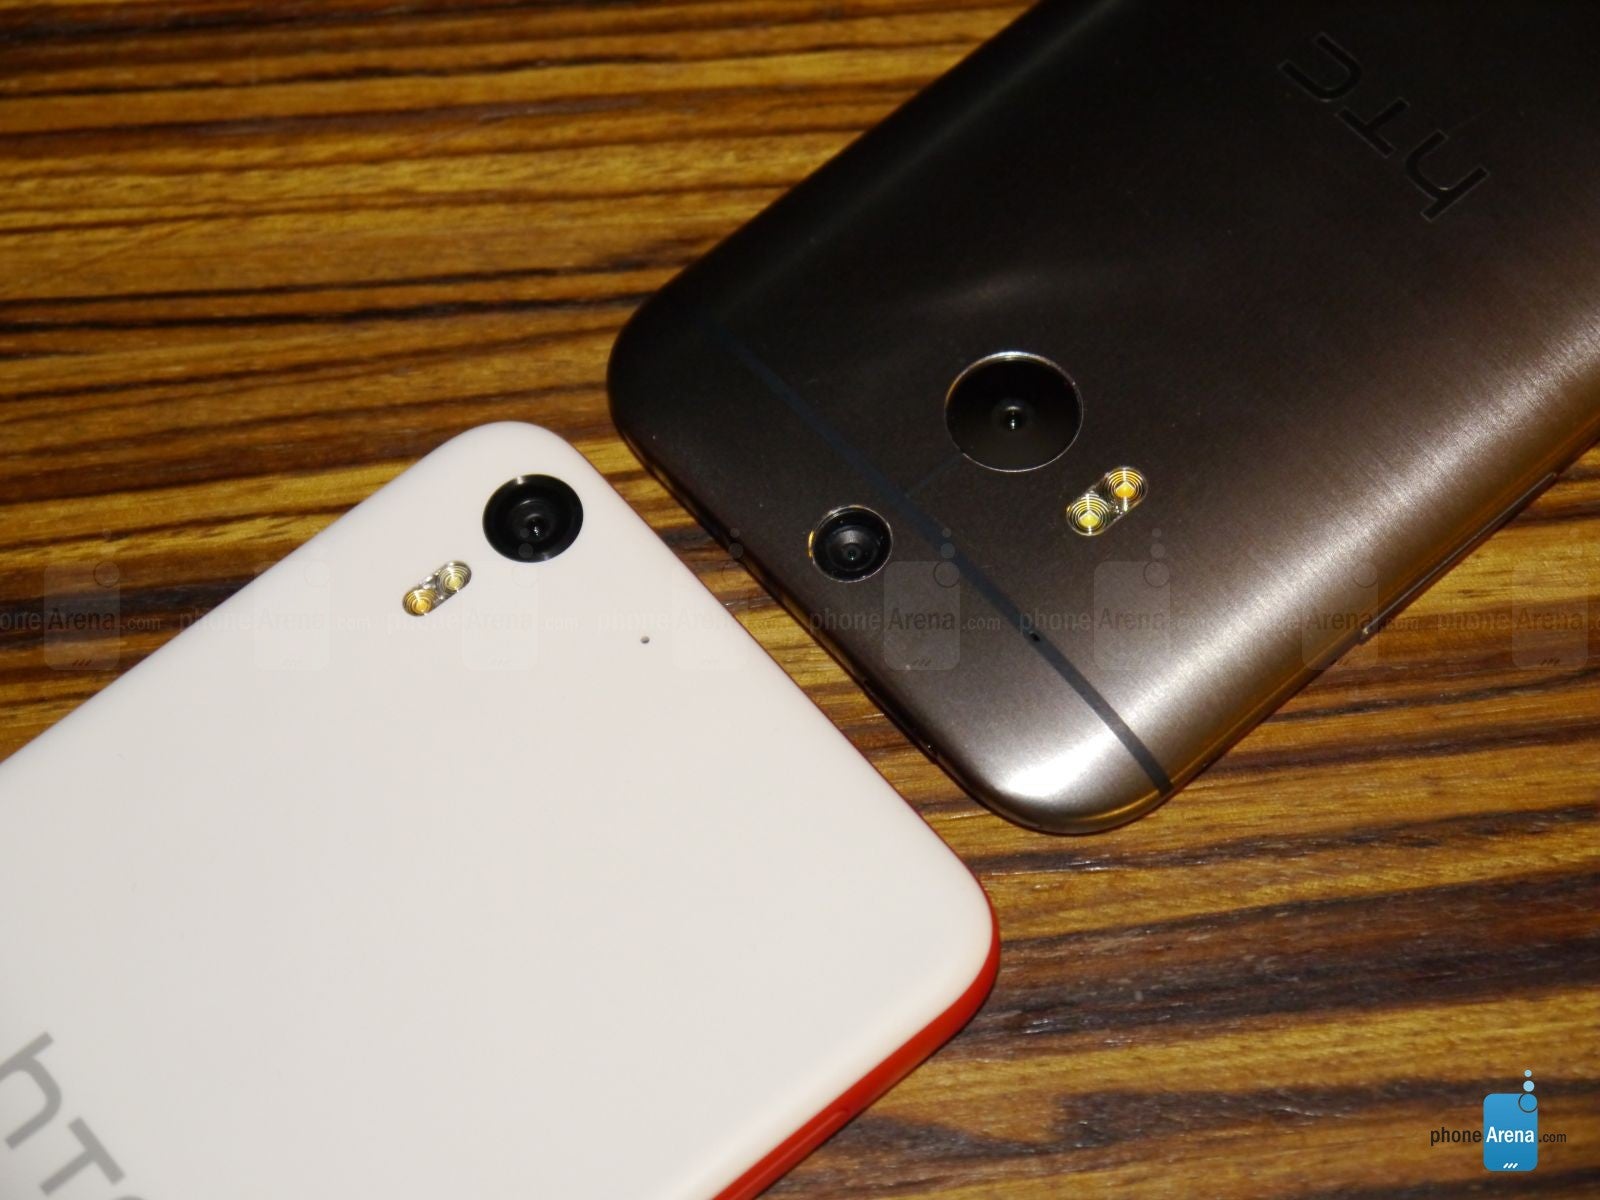 HTC Desire EYE versus HTC One (M8): first look